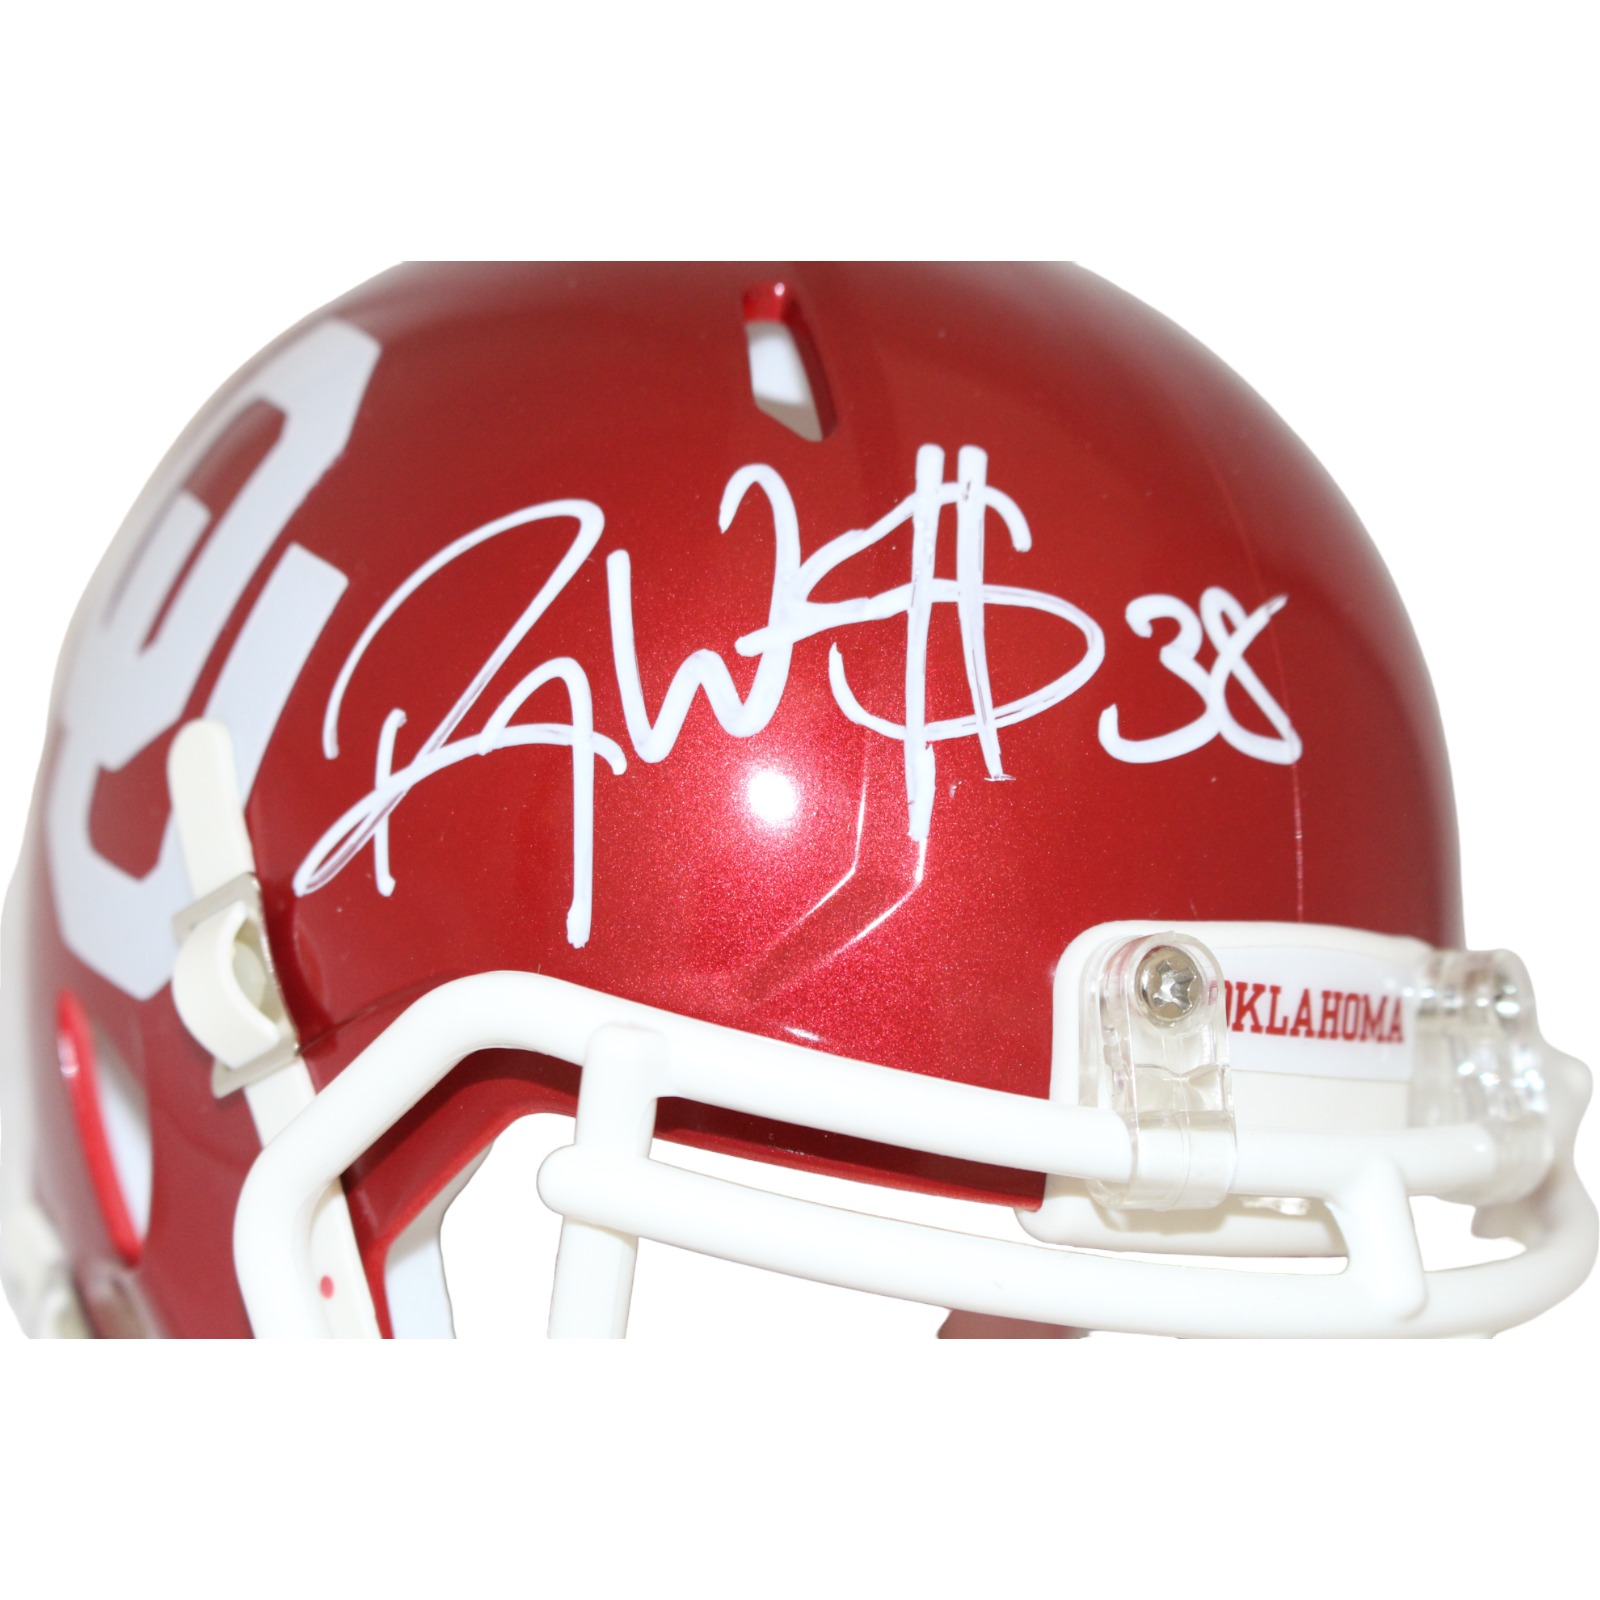 Roy Williams Autographed/Signed Oklahoma Sooners Mini Helmet Beckett